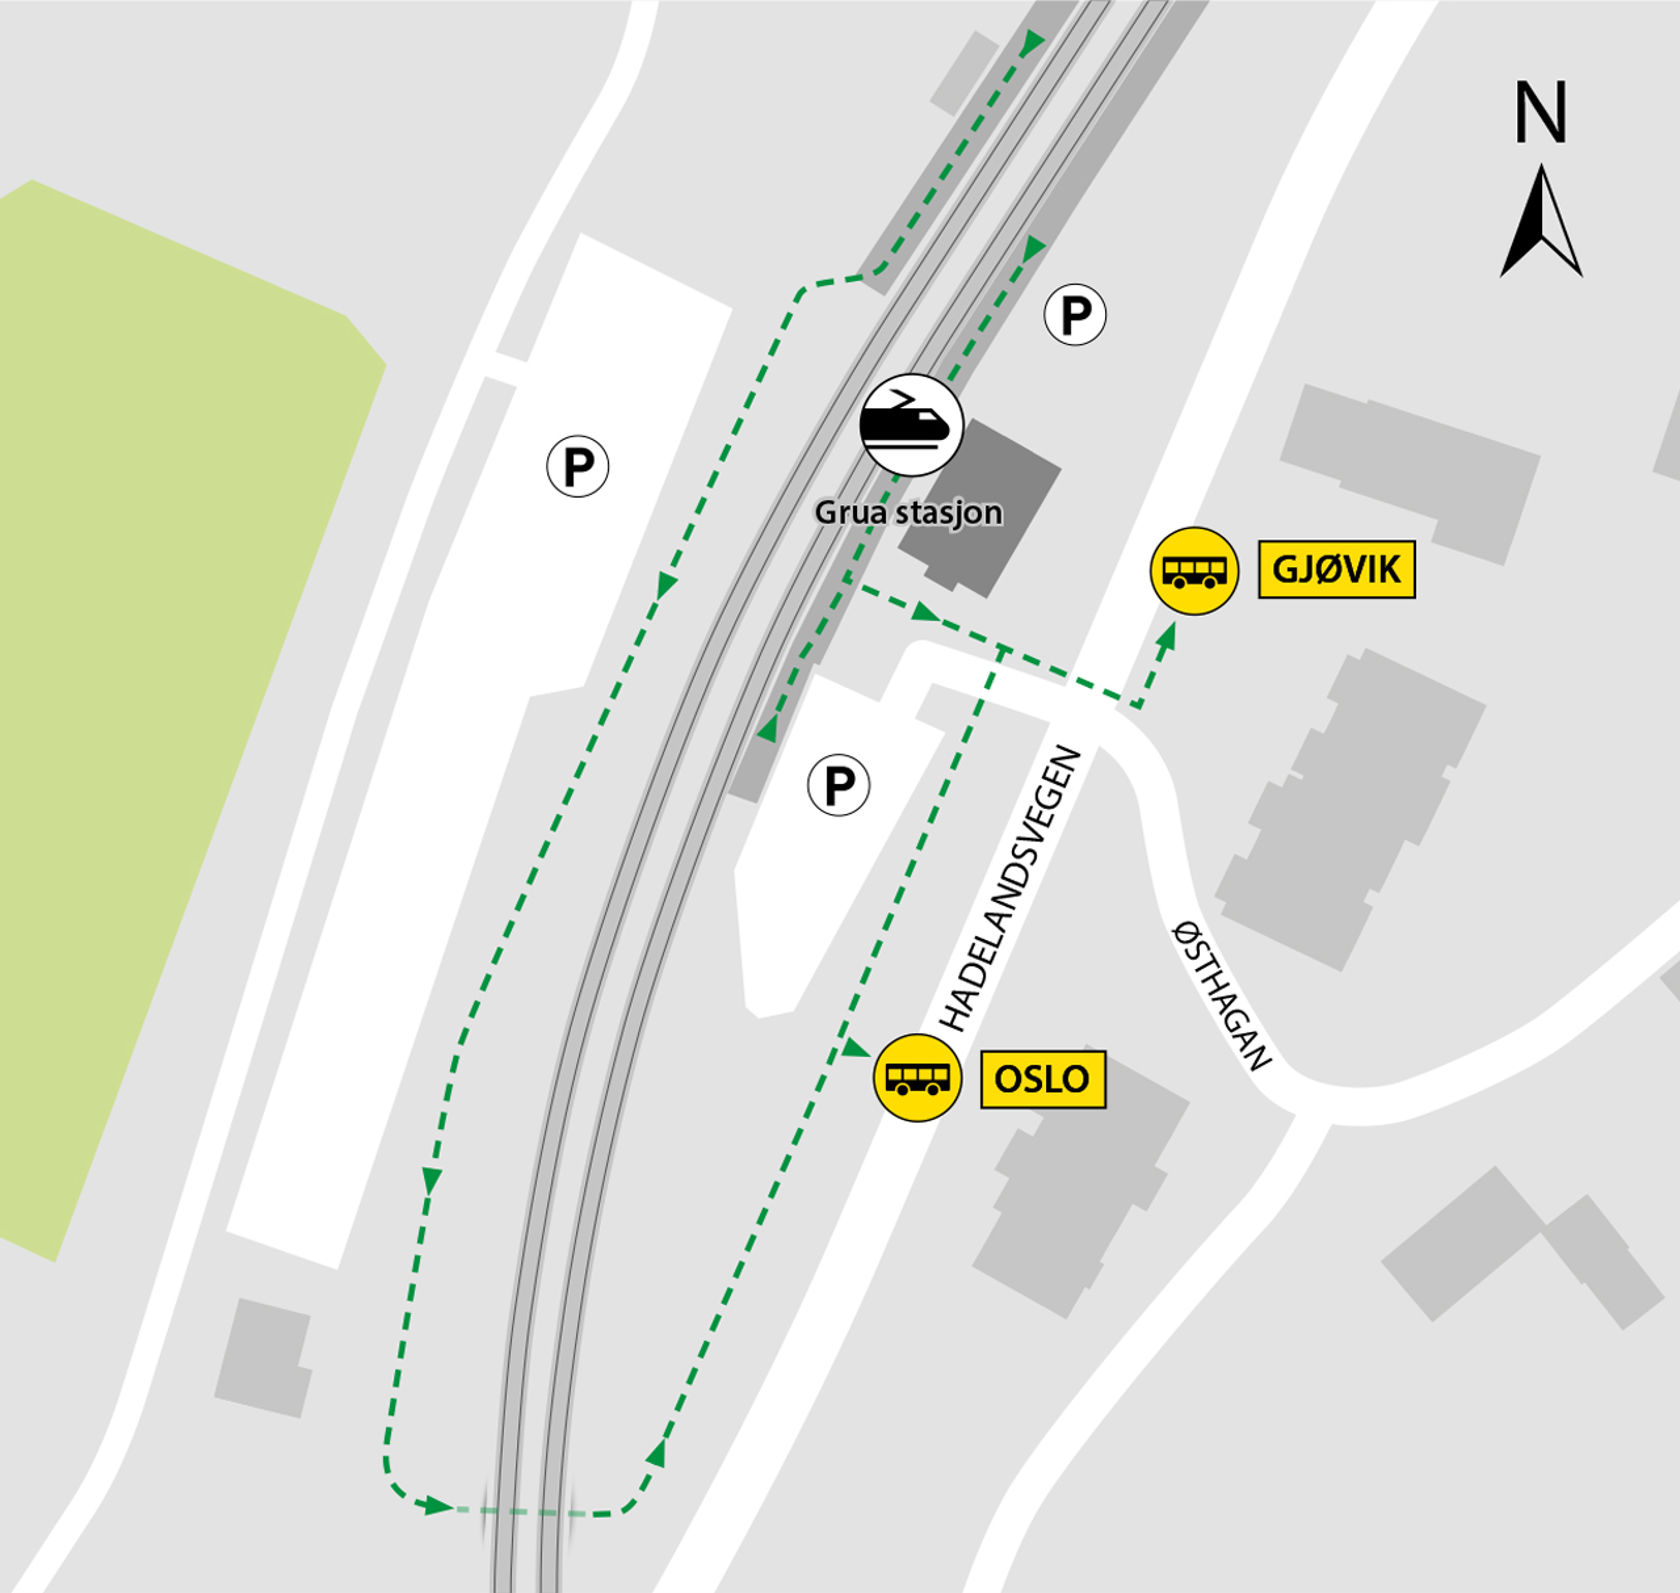 Kartet viser at bussene kjører fra bussholdeplassen Grua stasjon. 